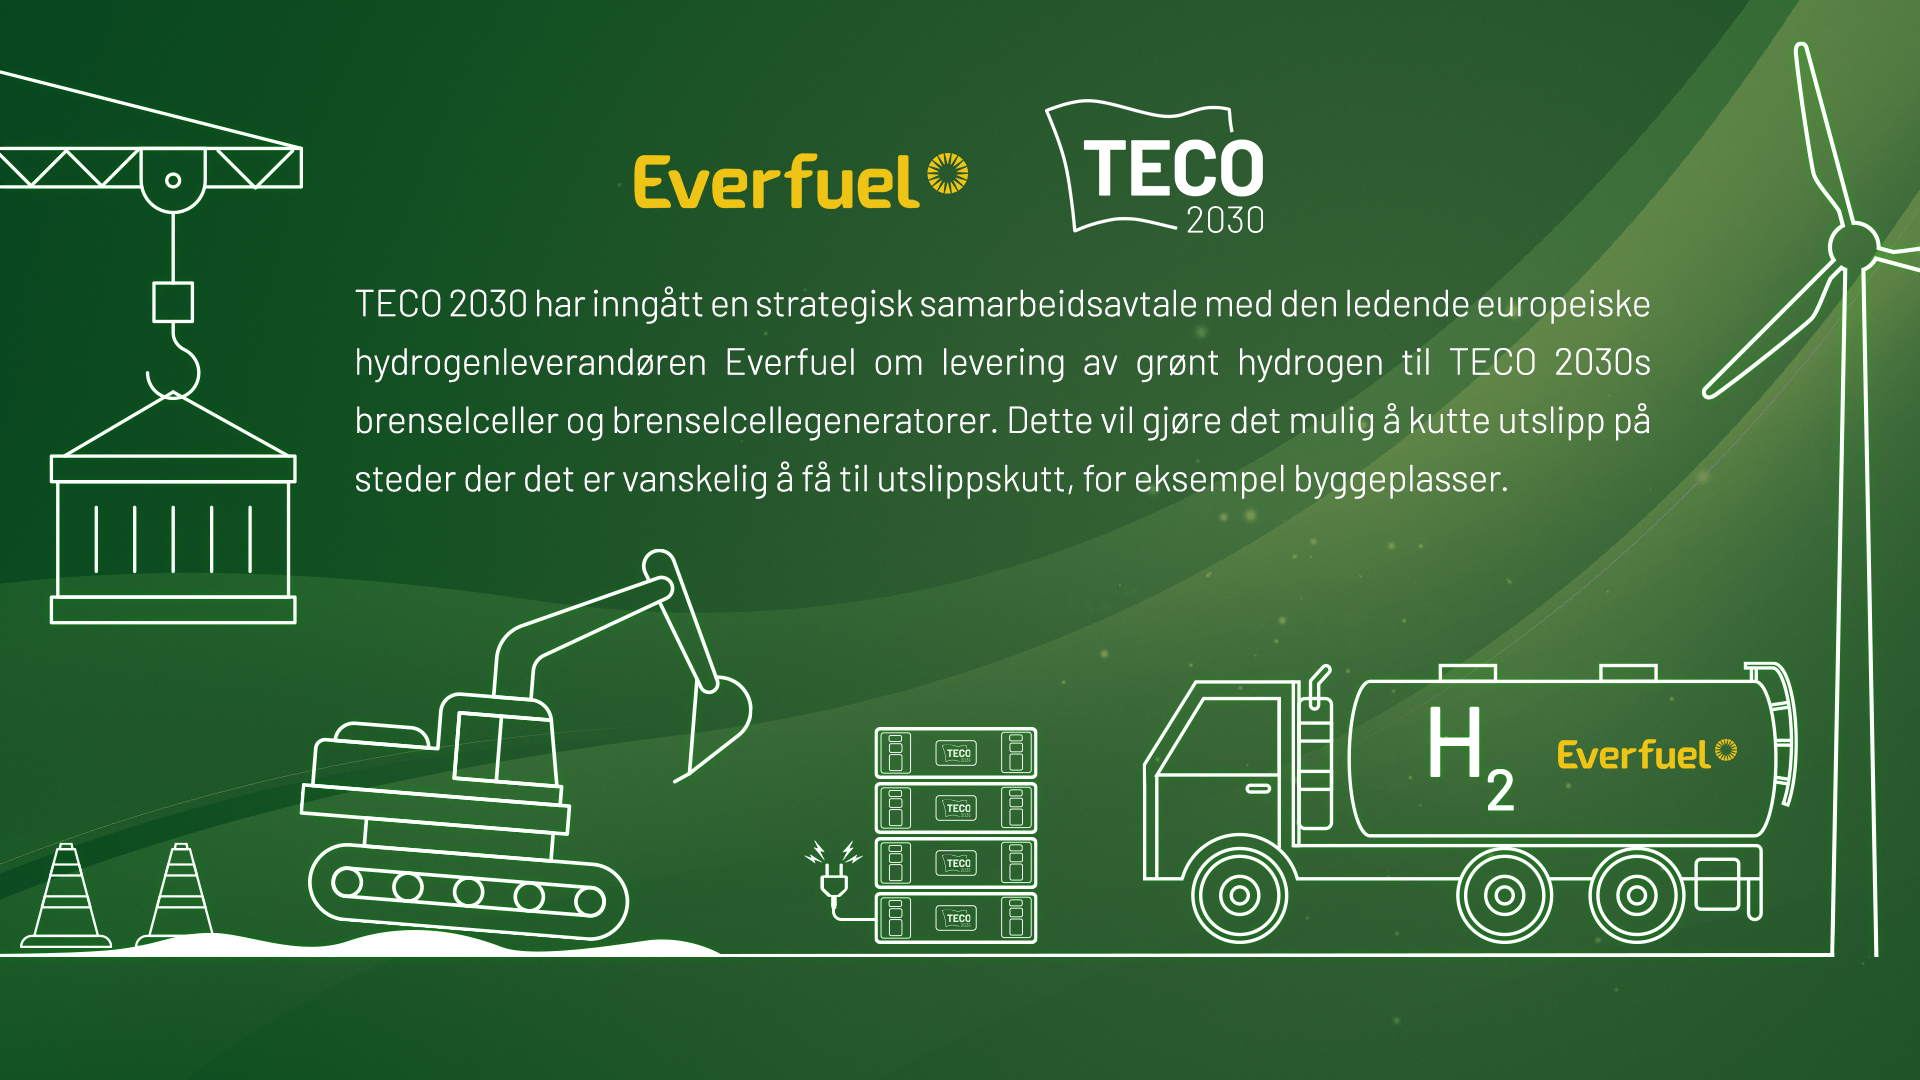 Everfuel vil levere grønt hydrogen til brenselceller og brenselcellegeneratorer utviklet av TECO 2030. Dette vil gjøre det mulig å kutte utslipp på steder der det er vanskelig å få til utslippskutt, for eksempel byggeplasser.